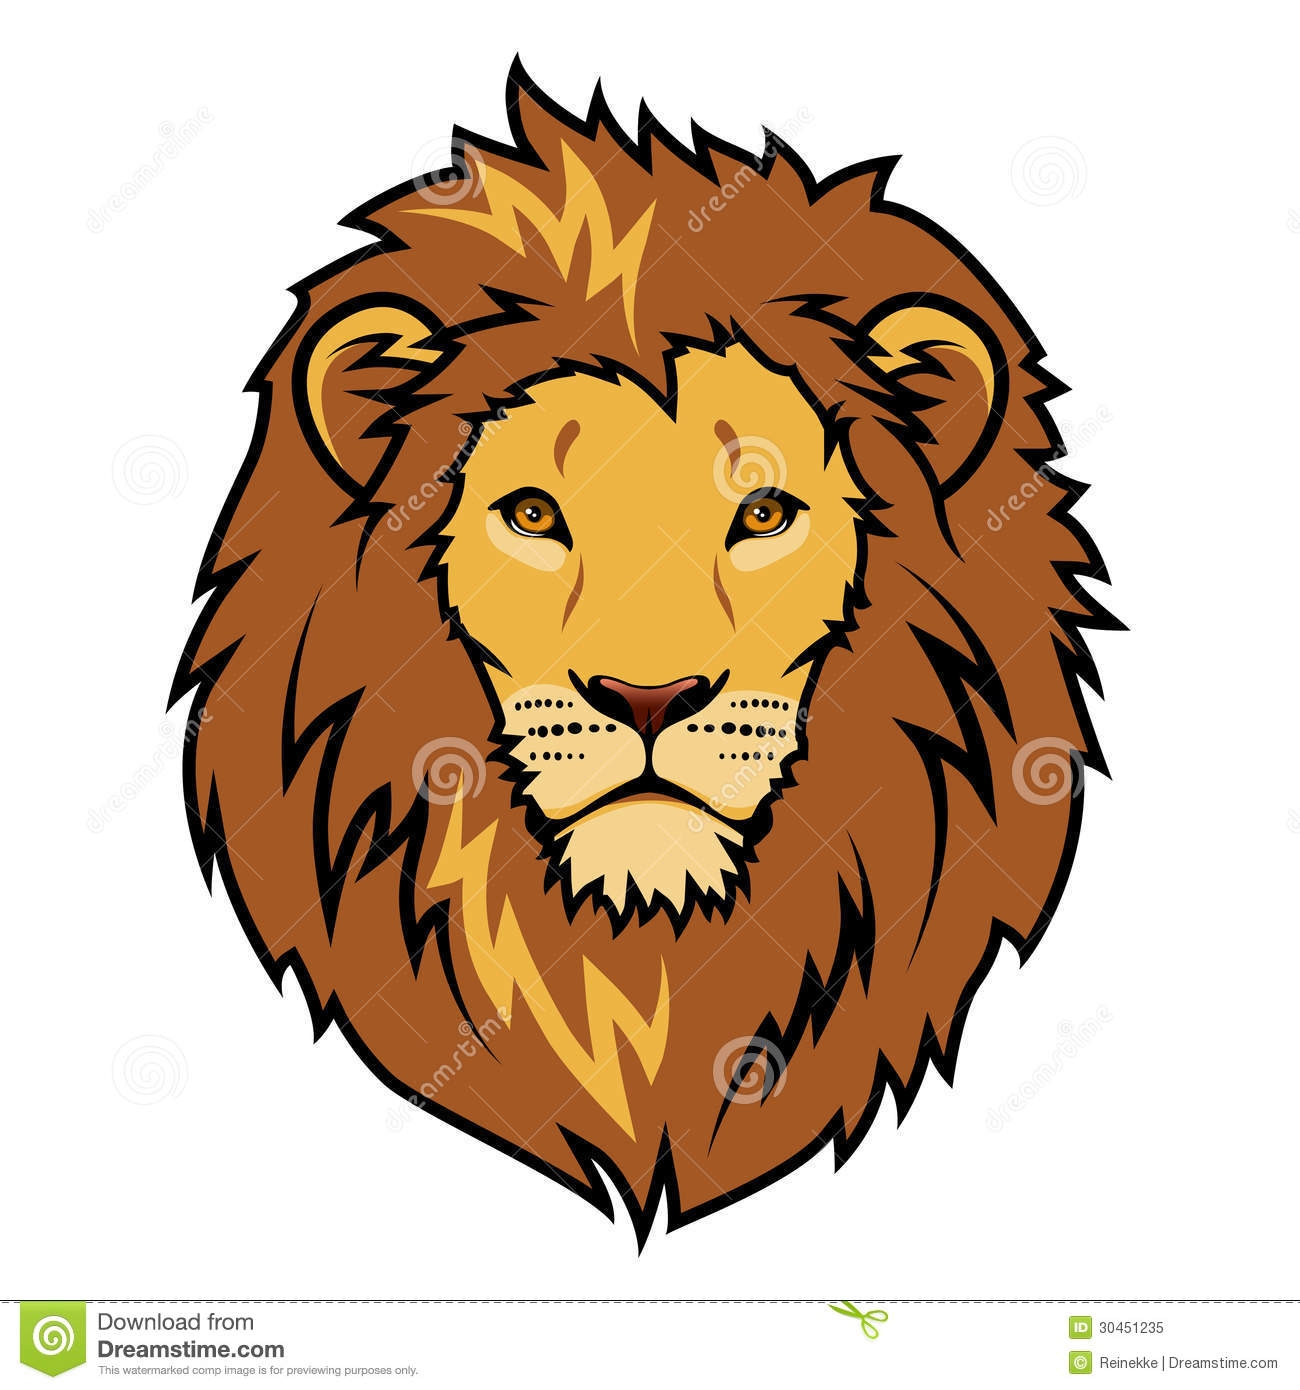 Lions on lion lion silhouette